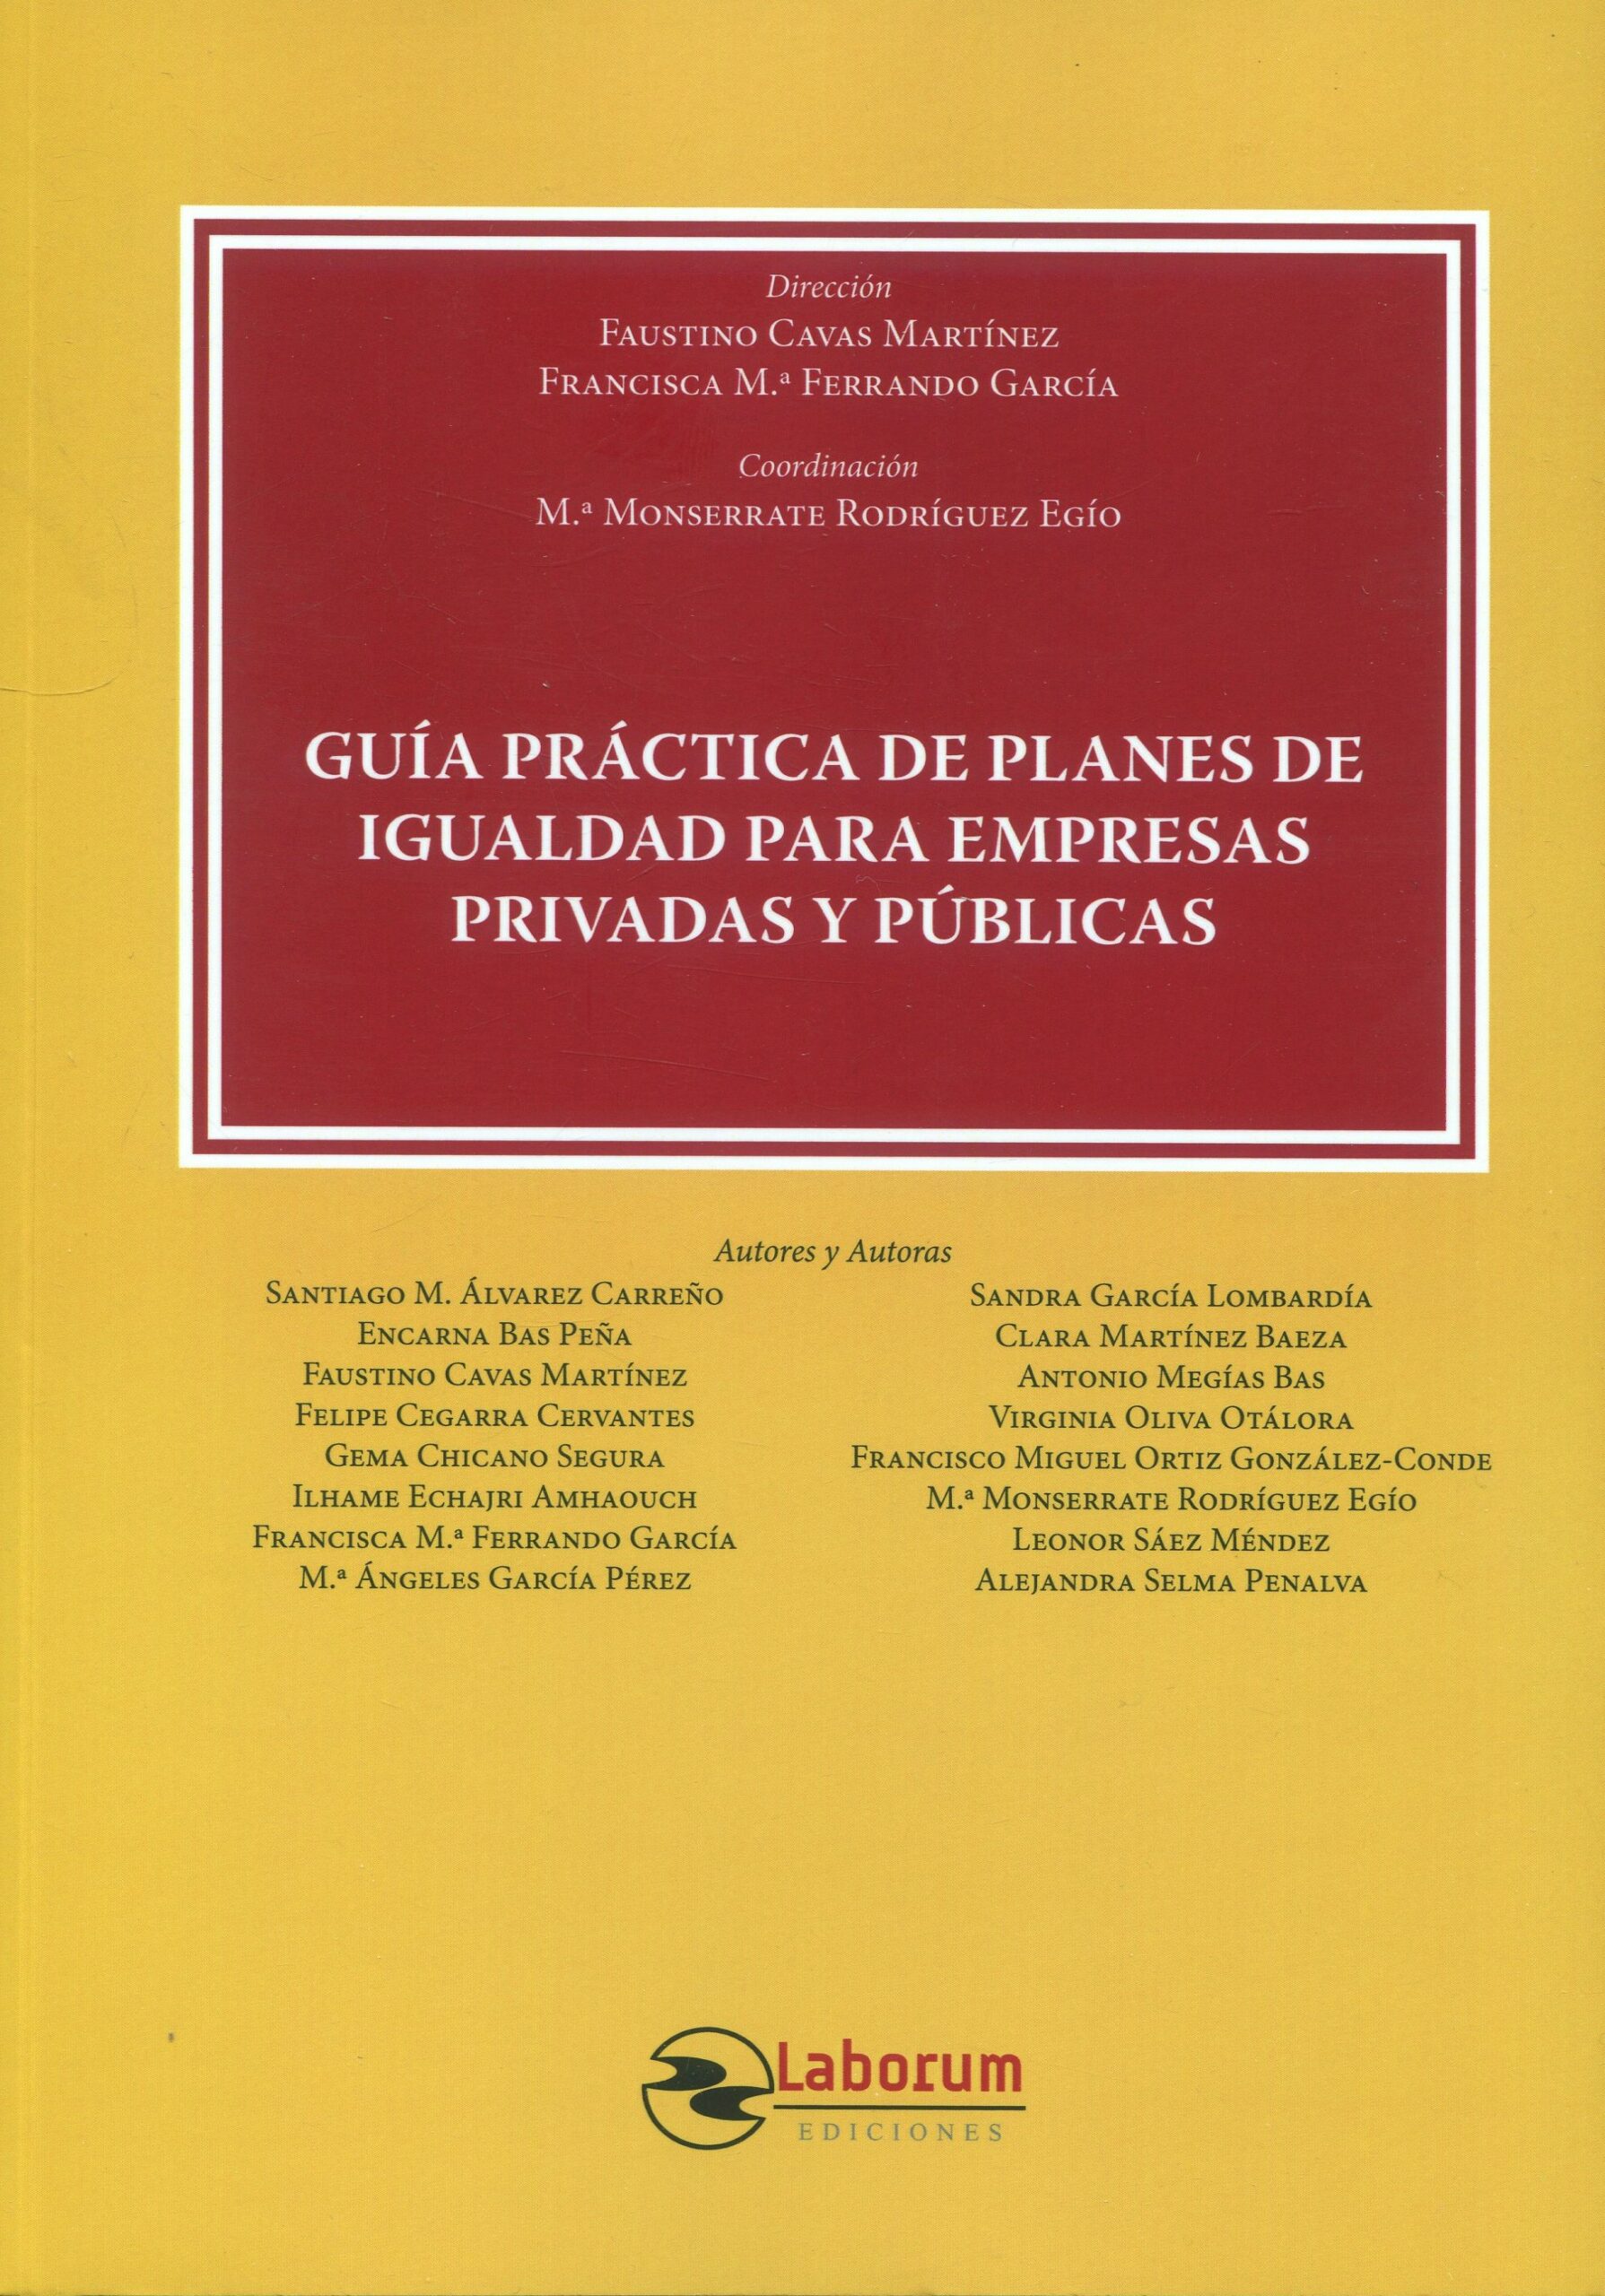 Imagen de portada del libro Guía práctica de planes de igualdad para empresas privadas y públicas